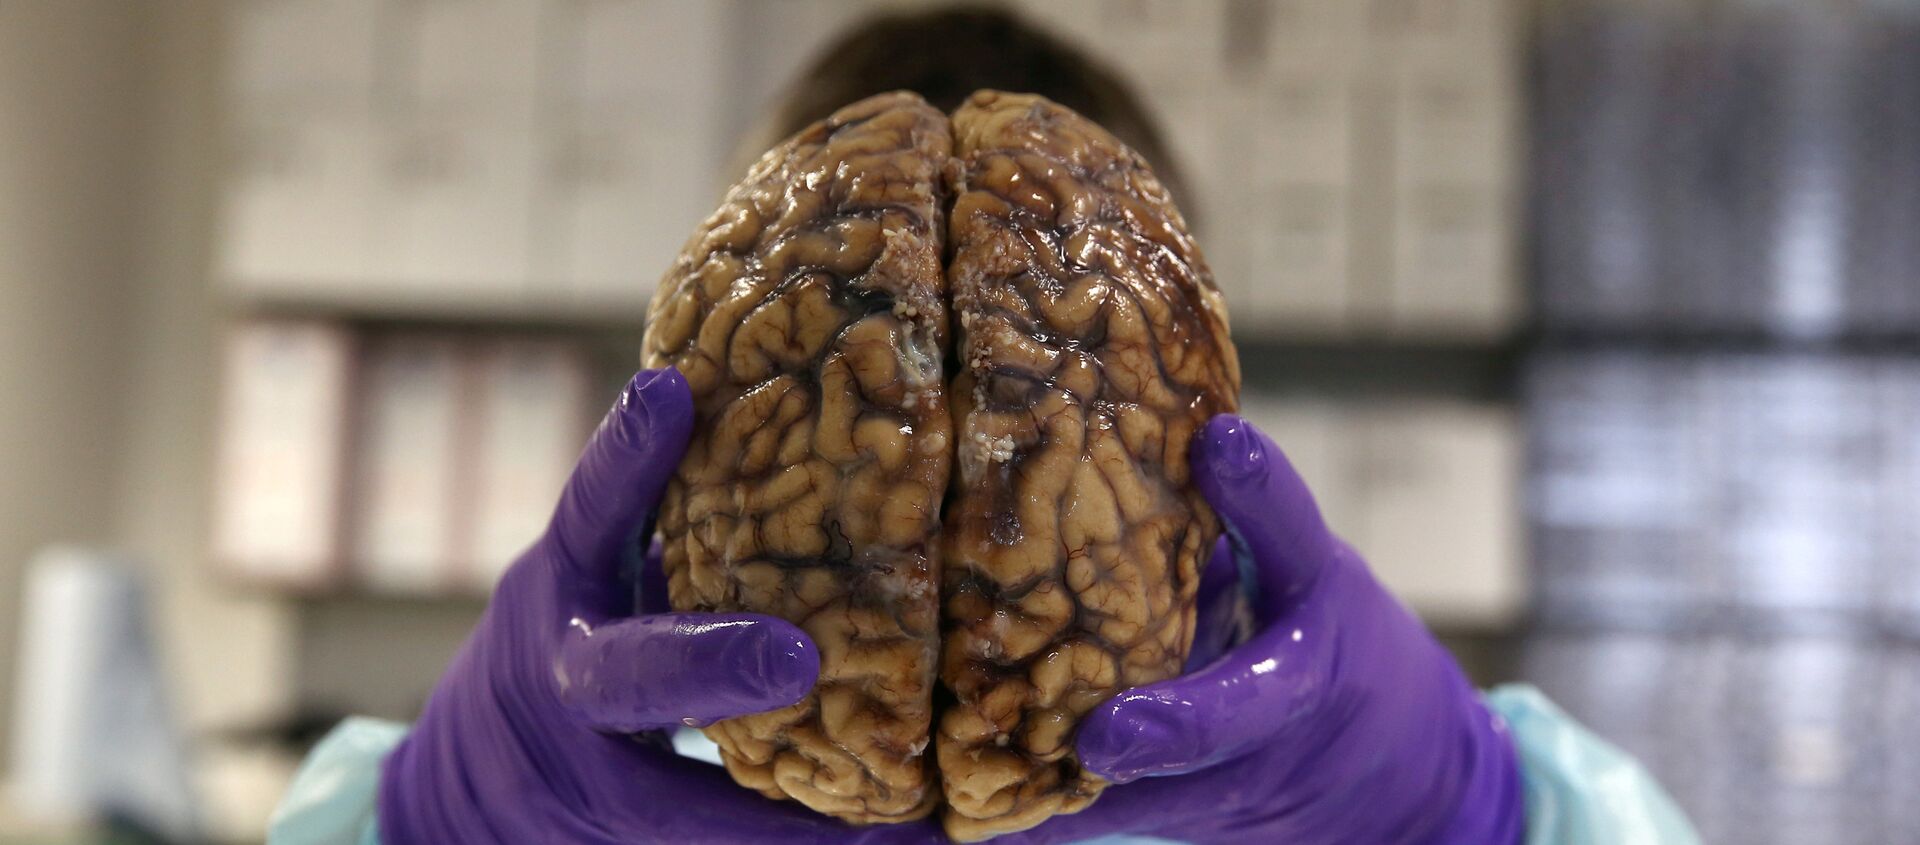 دماغ بشري - سبوتنيك عربي, 1920, 15.09.2021